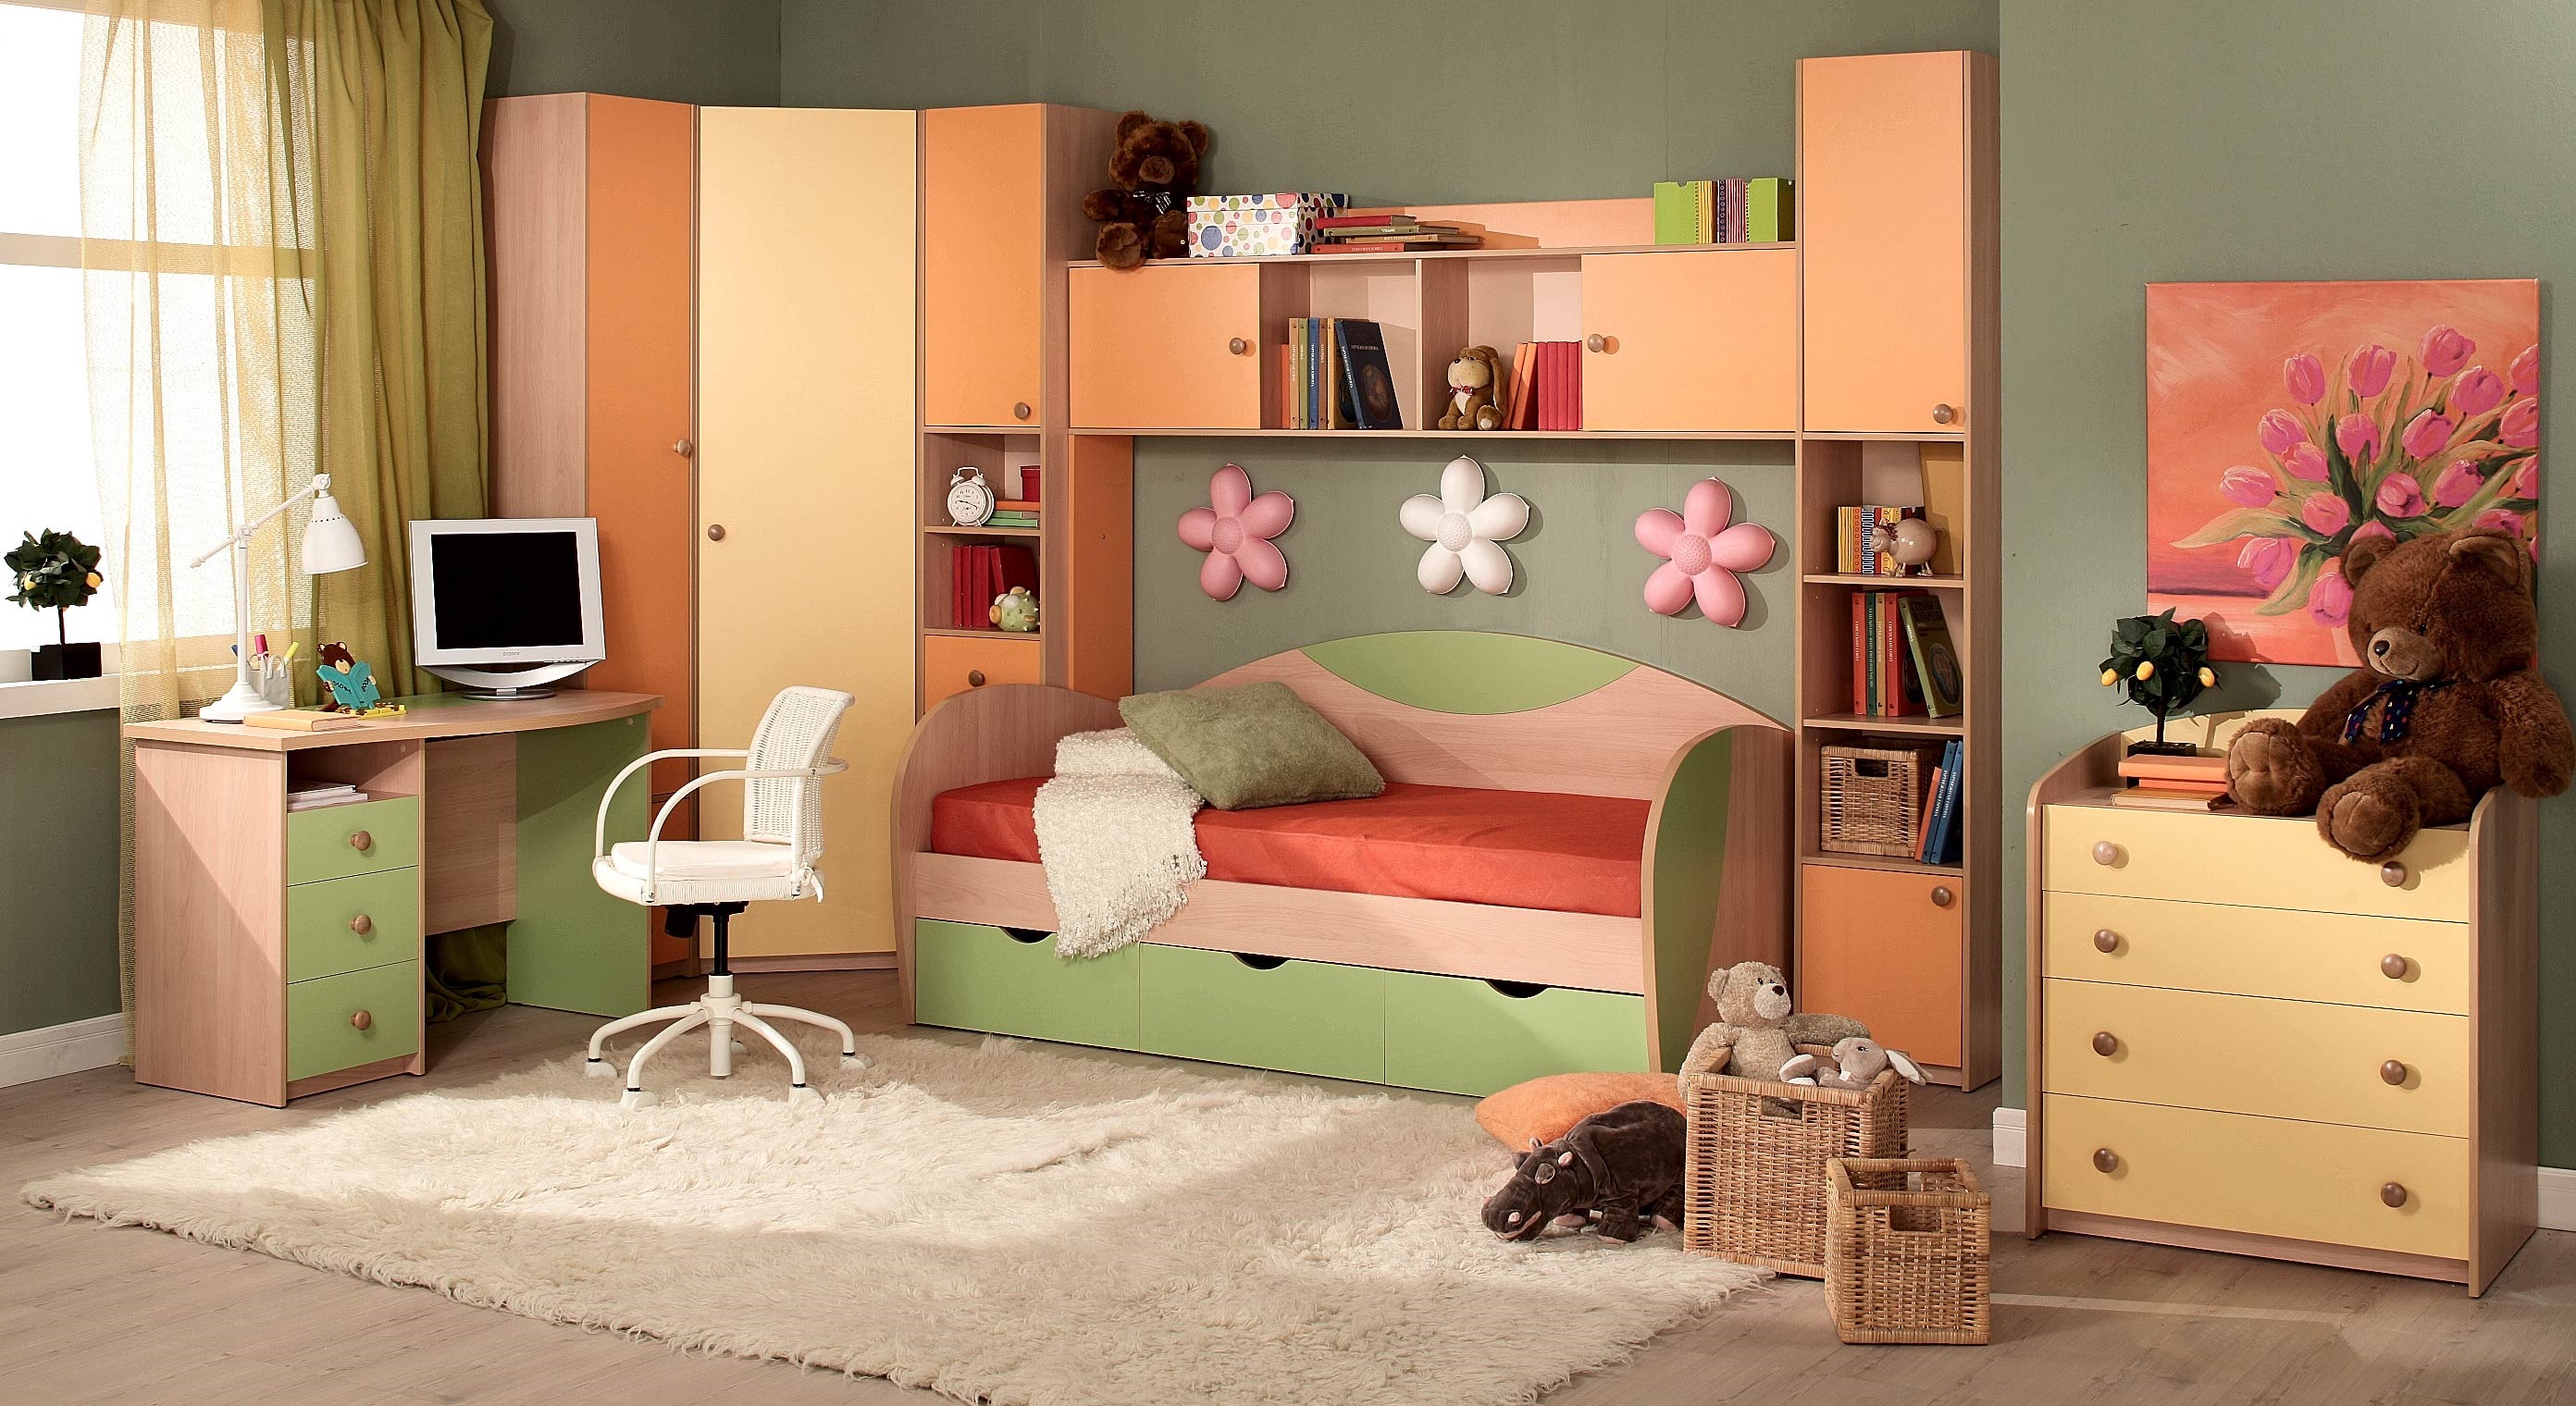 Встроенная мебель в детской комнате